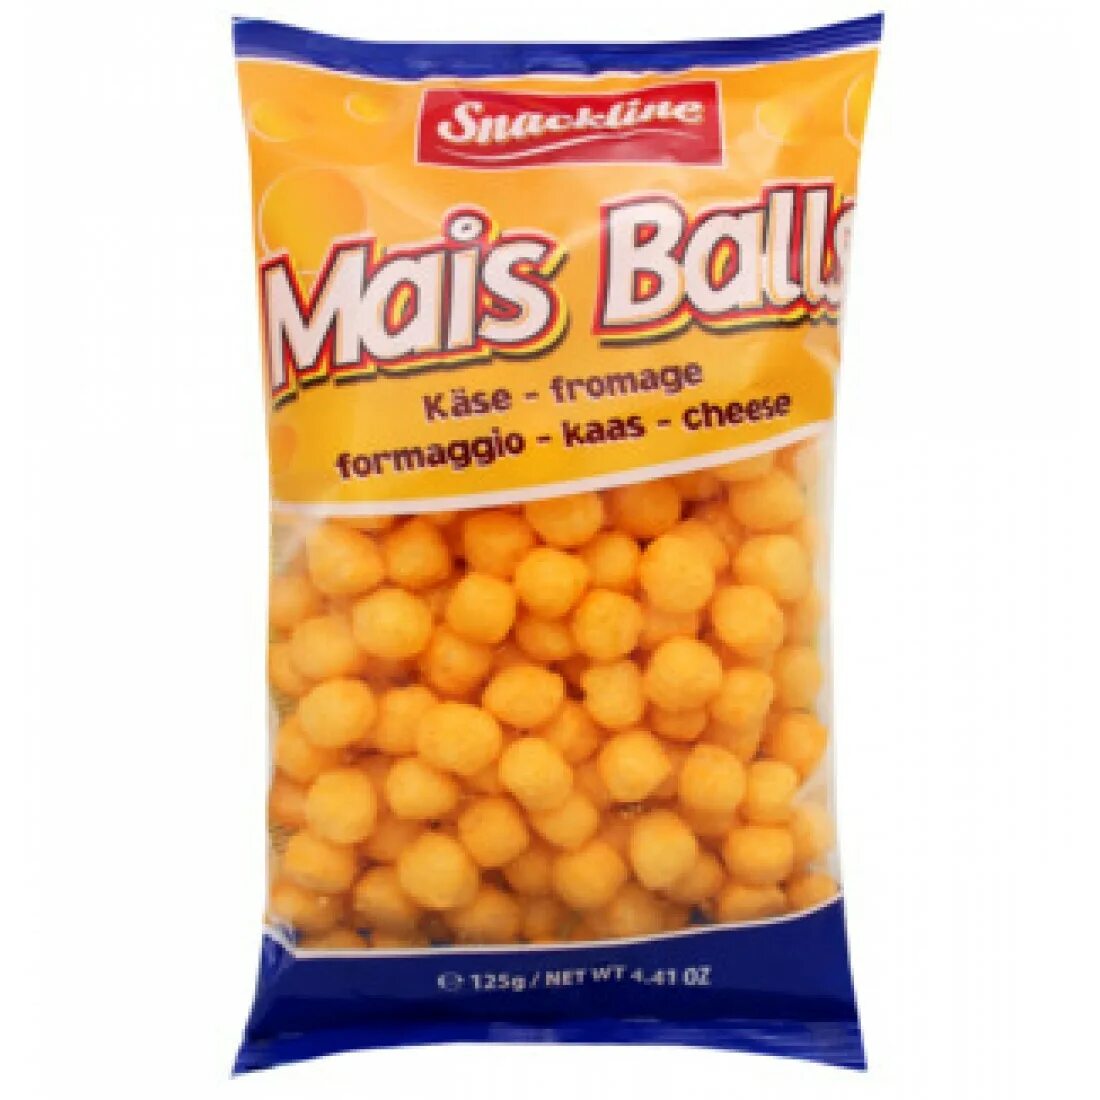 Кукурузные снэки Chees Ball. Сыр Ball кукурузные шарики. Сырные шарики Корн бол. Сырные шарики чипсы. Кукурузные шарики сыр ball